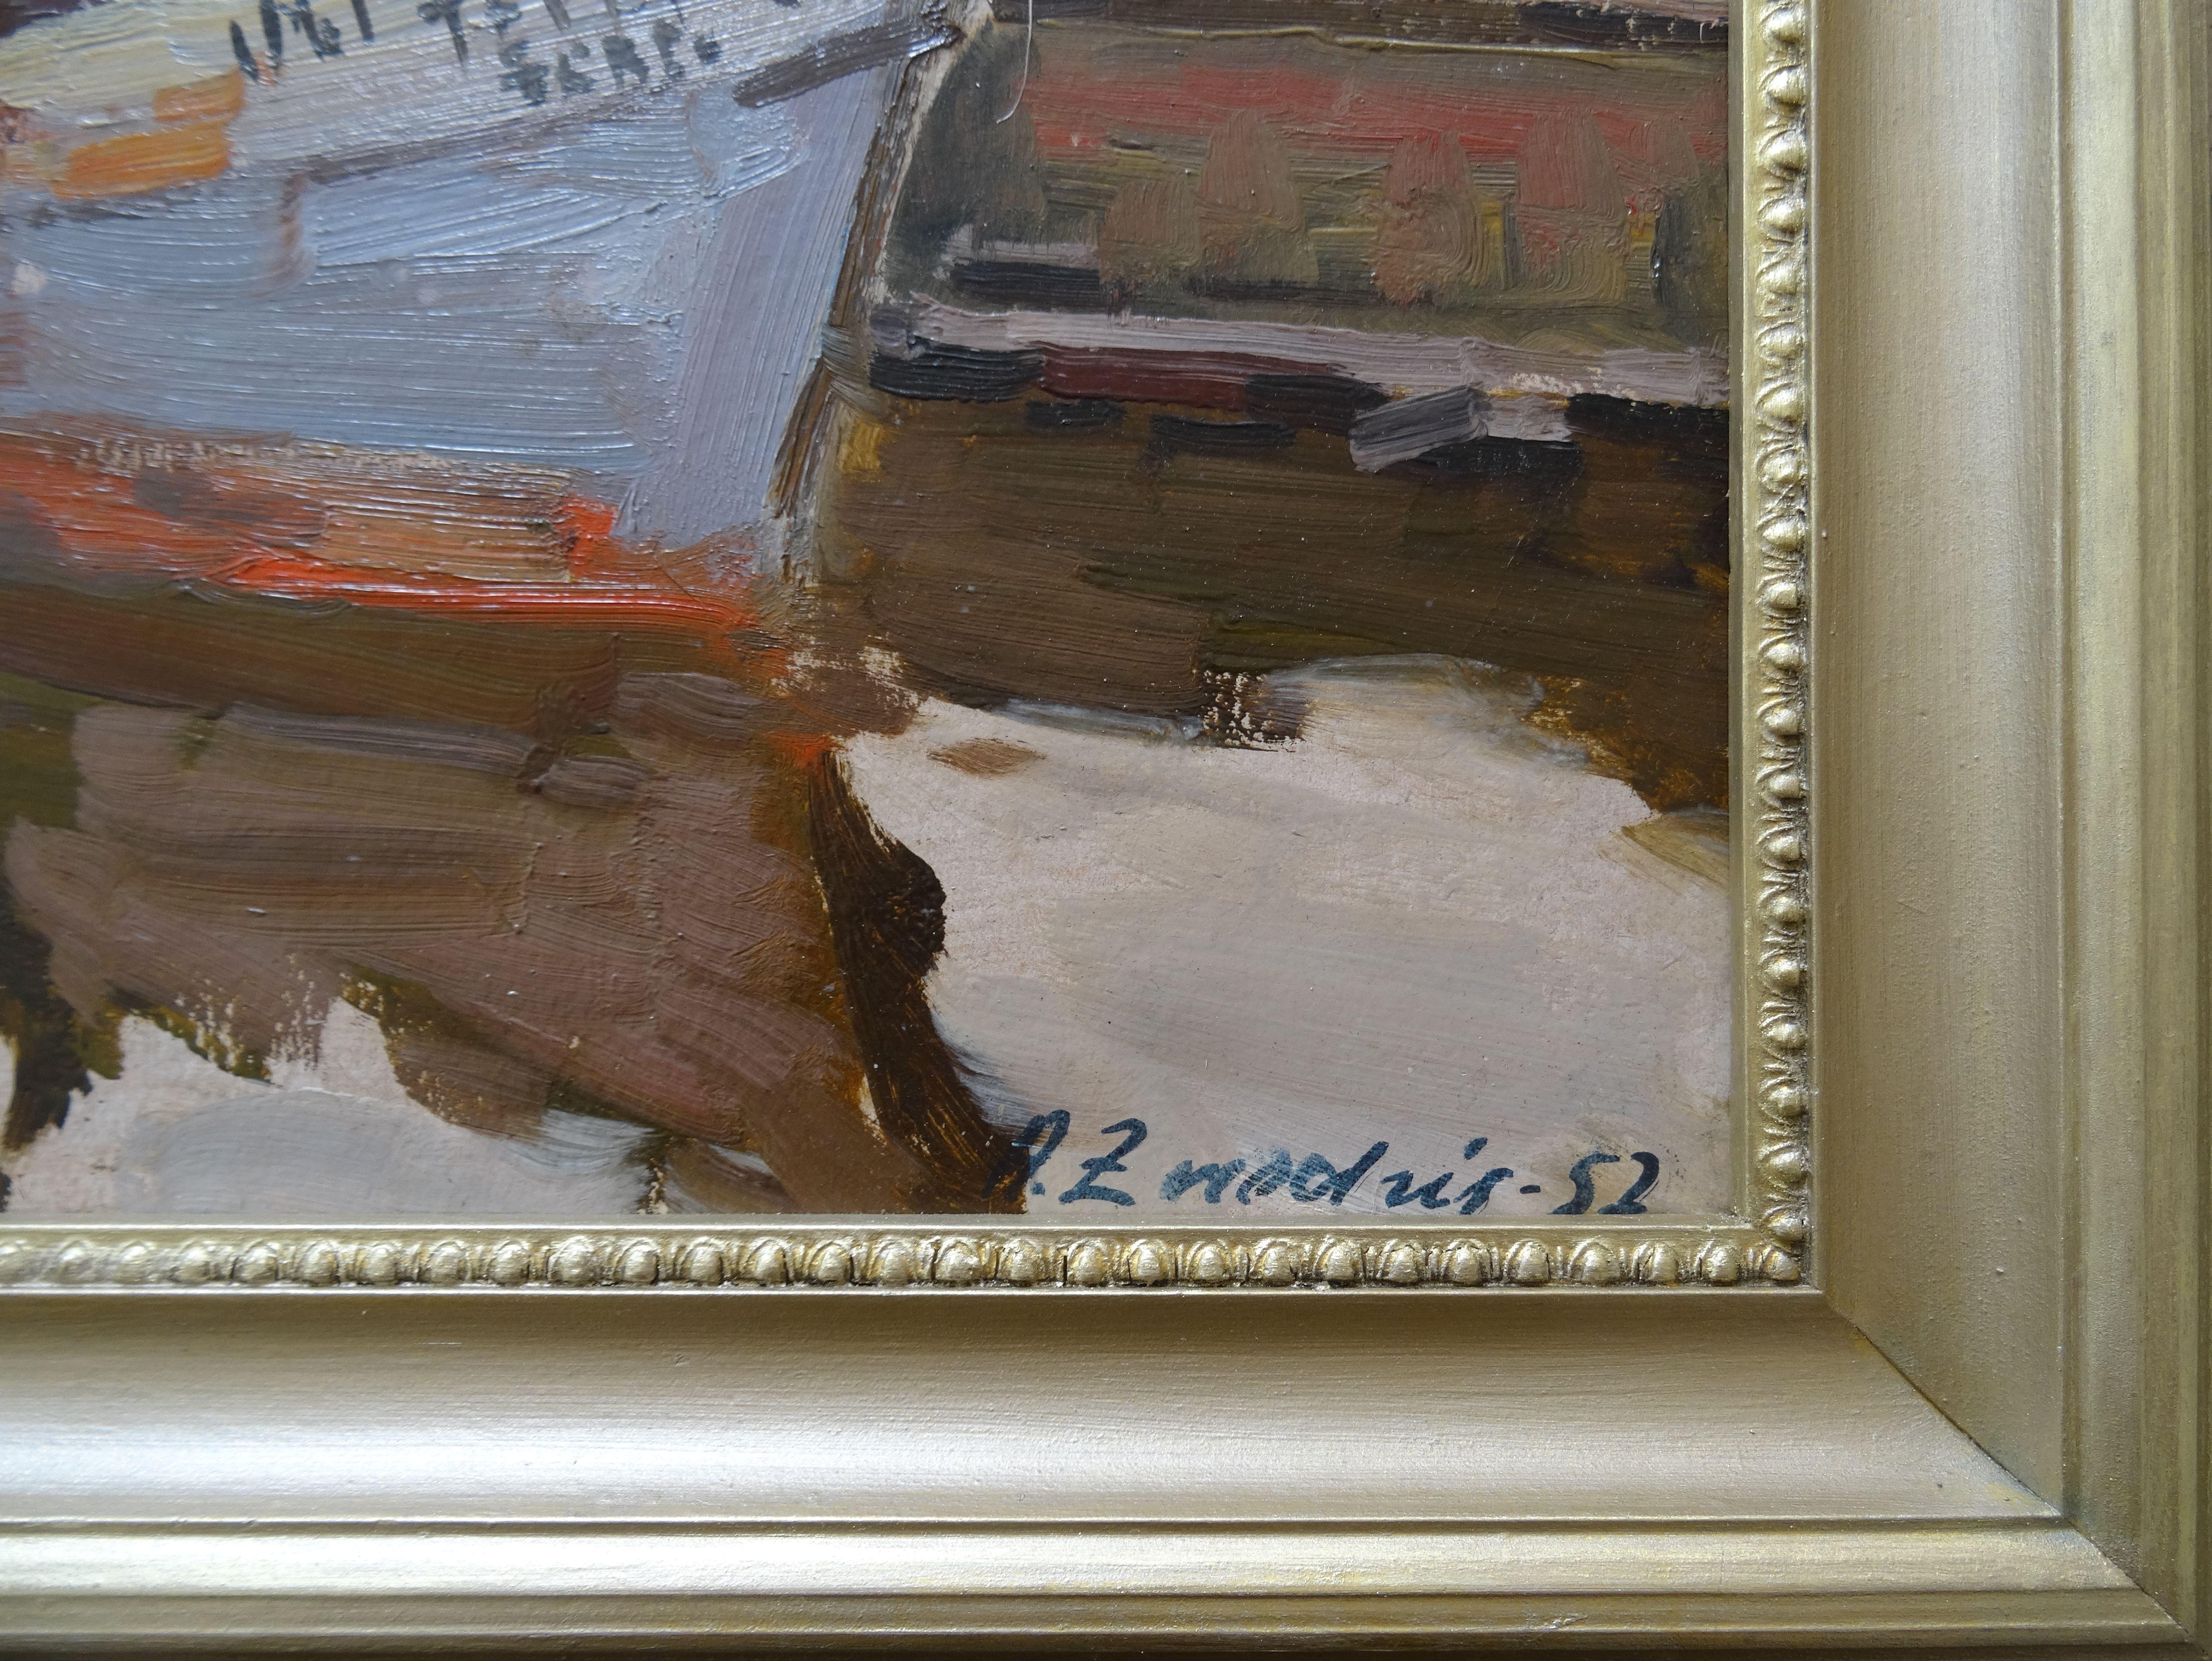 Peinture avec un bateau dans des couleurs brunes chaudes
A. Zviedris était membre de l'Union des artistes lettons depuis 1945 et a eu plus de 50 expositions personnelles en Lettonie. Il a beaucoup voyagé en yacht en Scandinavie et en Europe